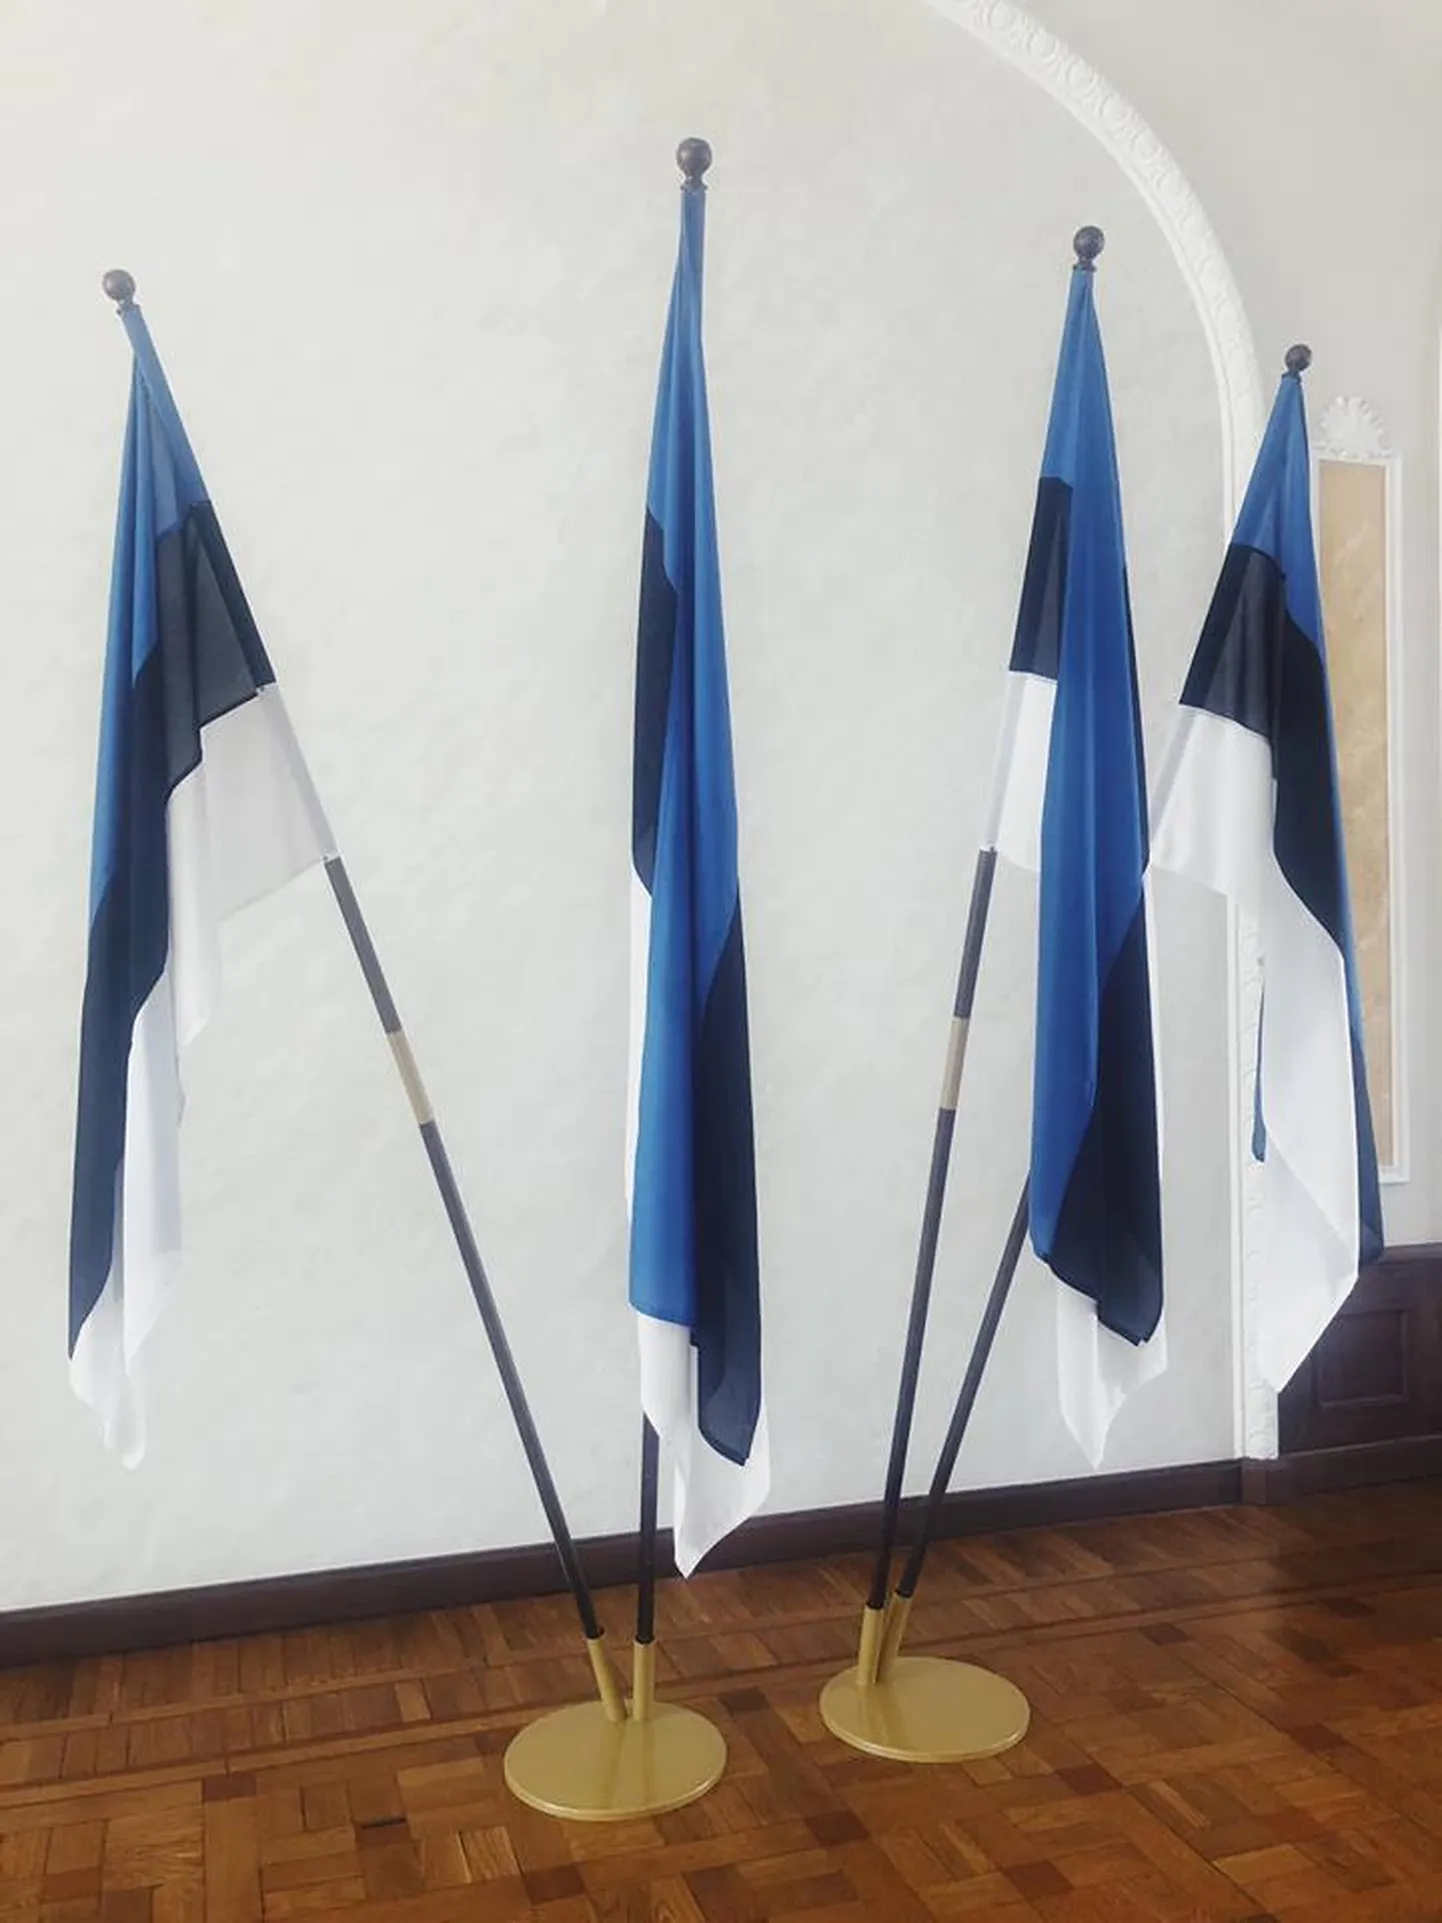 Eesti lipud Toompea lossi Valges saalis.